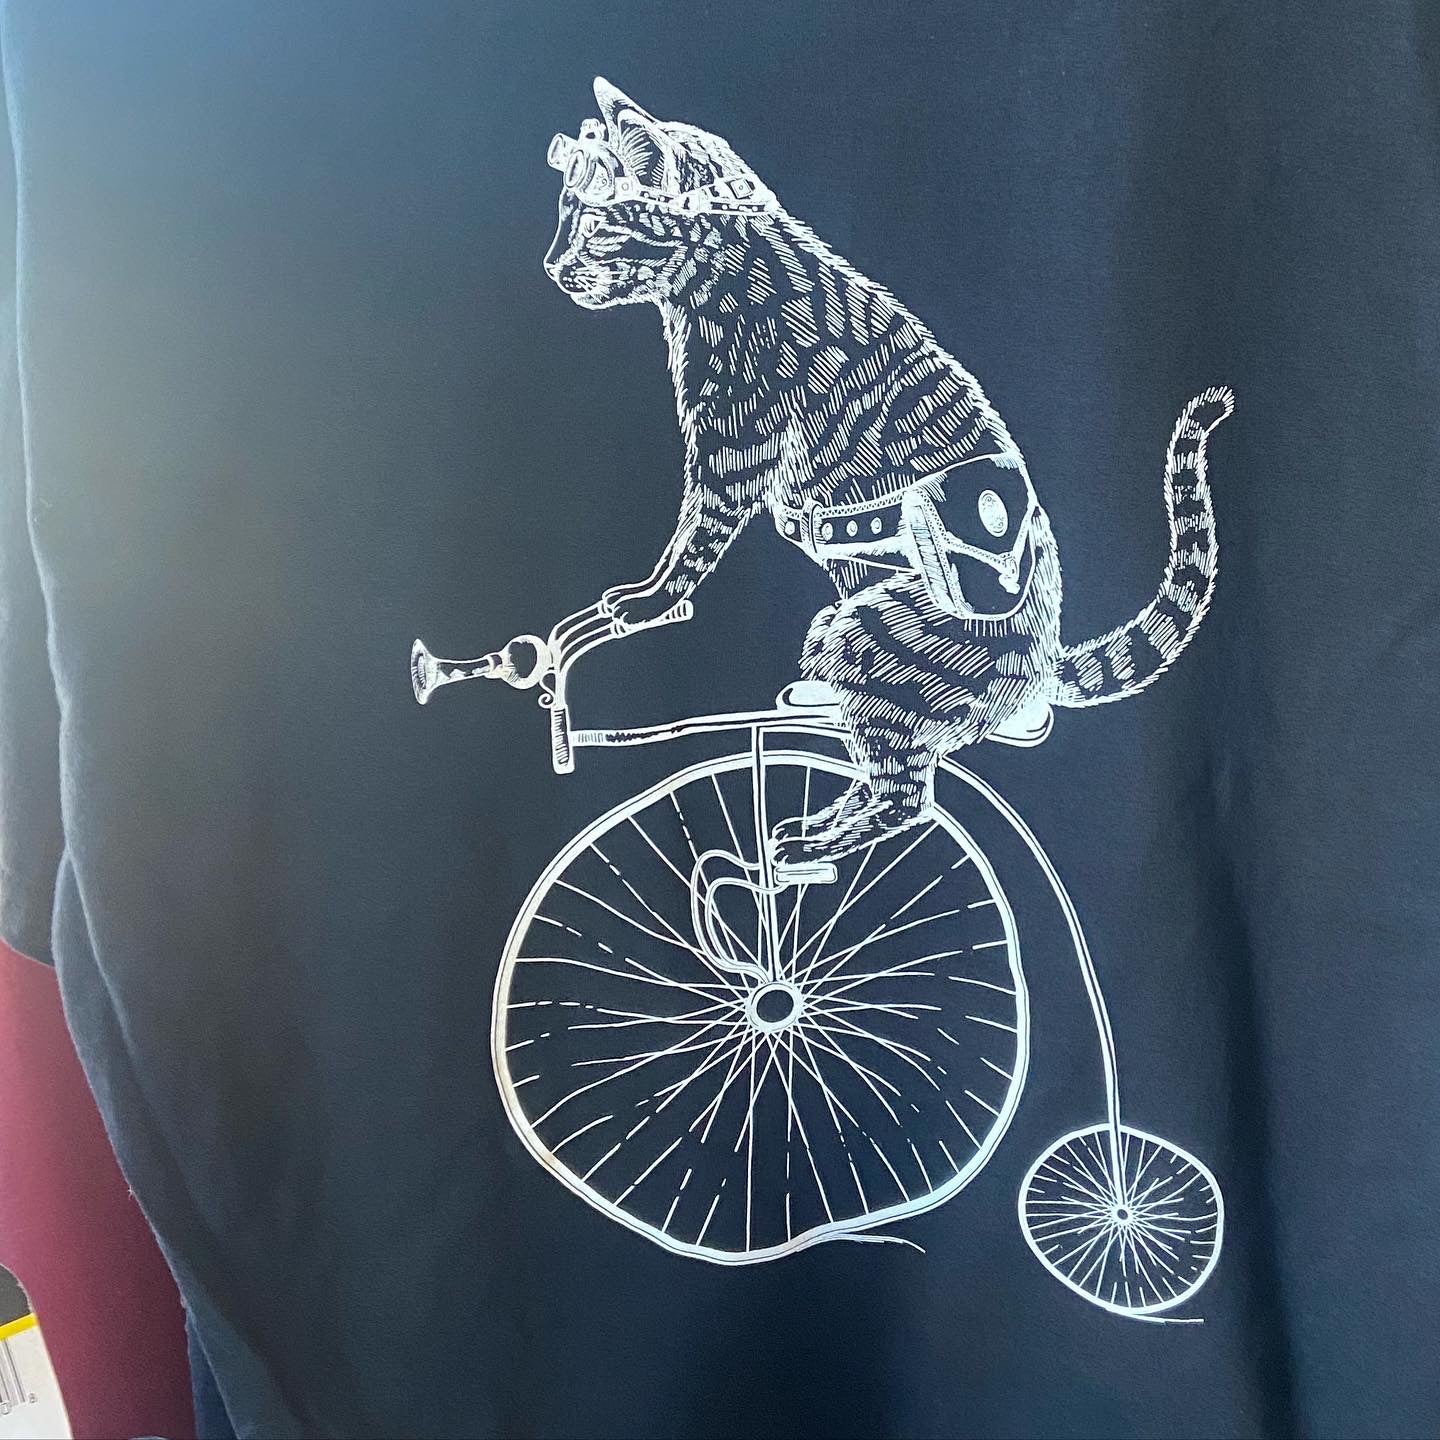 TomCat Bikes T-shirt